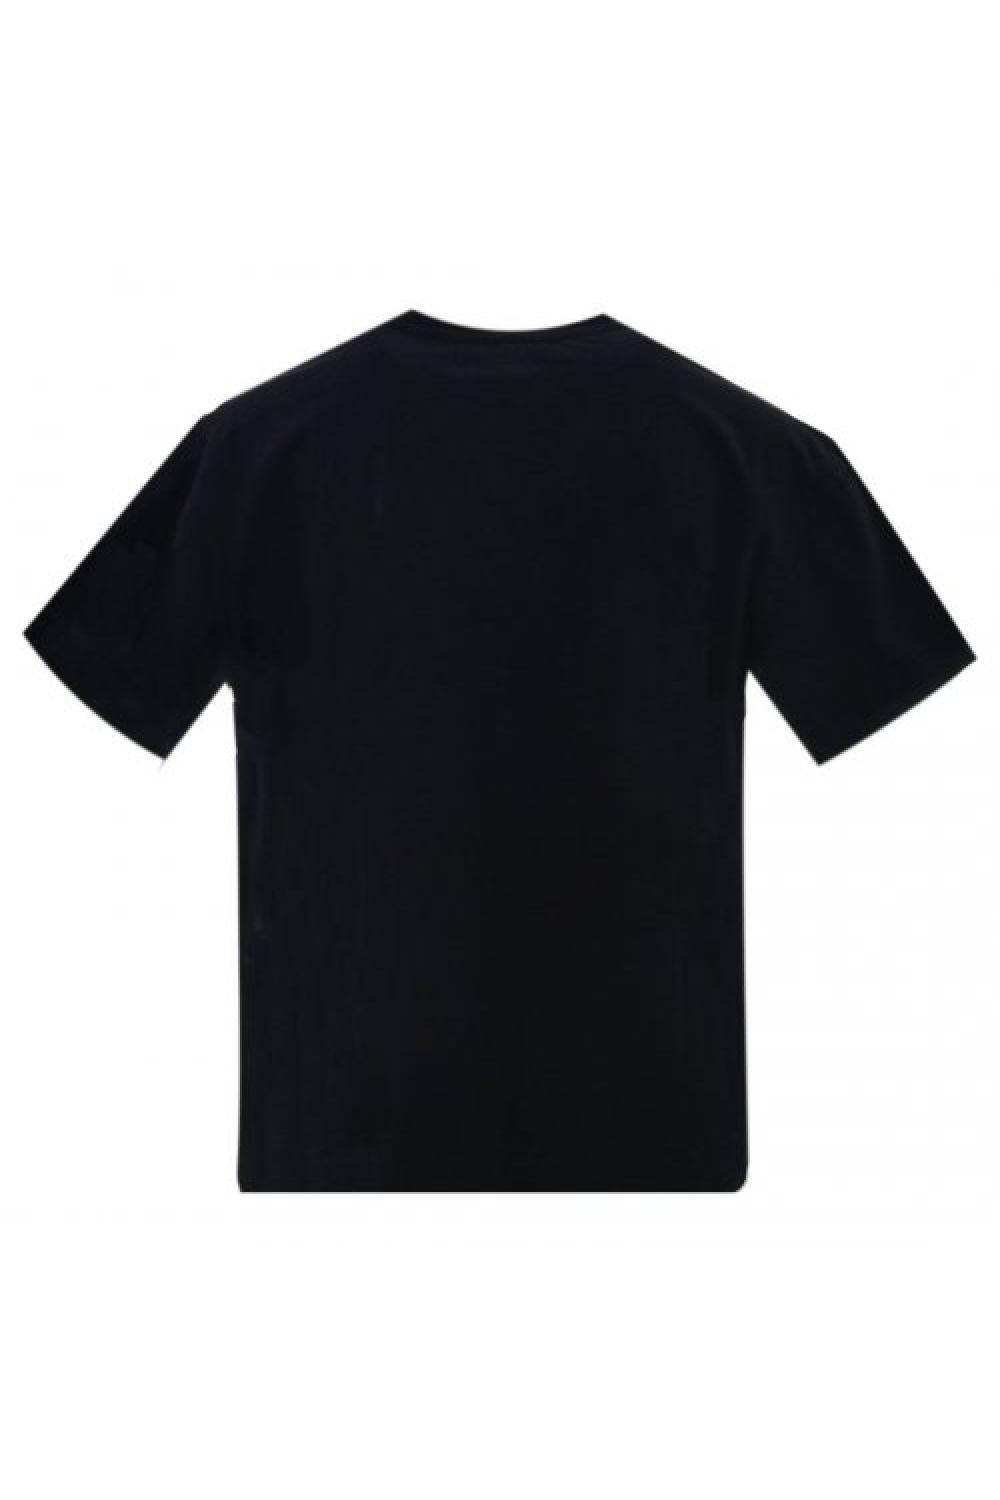 STAFF T-shirt Tessa Γυναικείο - Μαύρο (63-013.047-N0090)